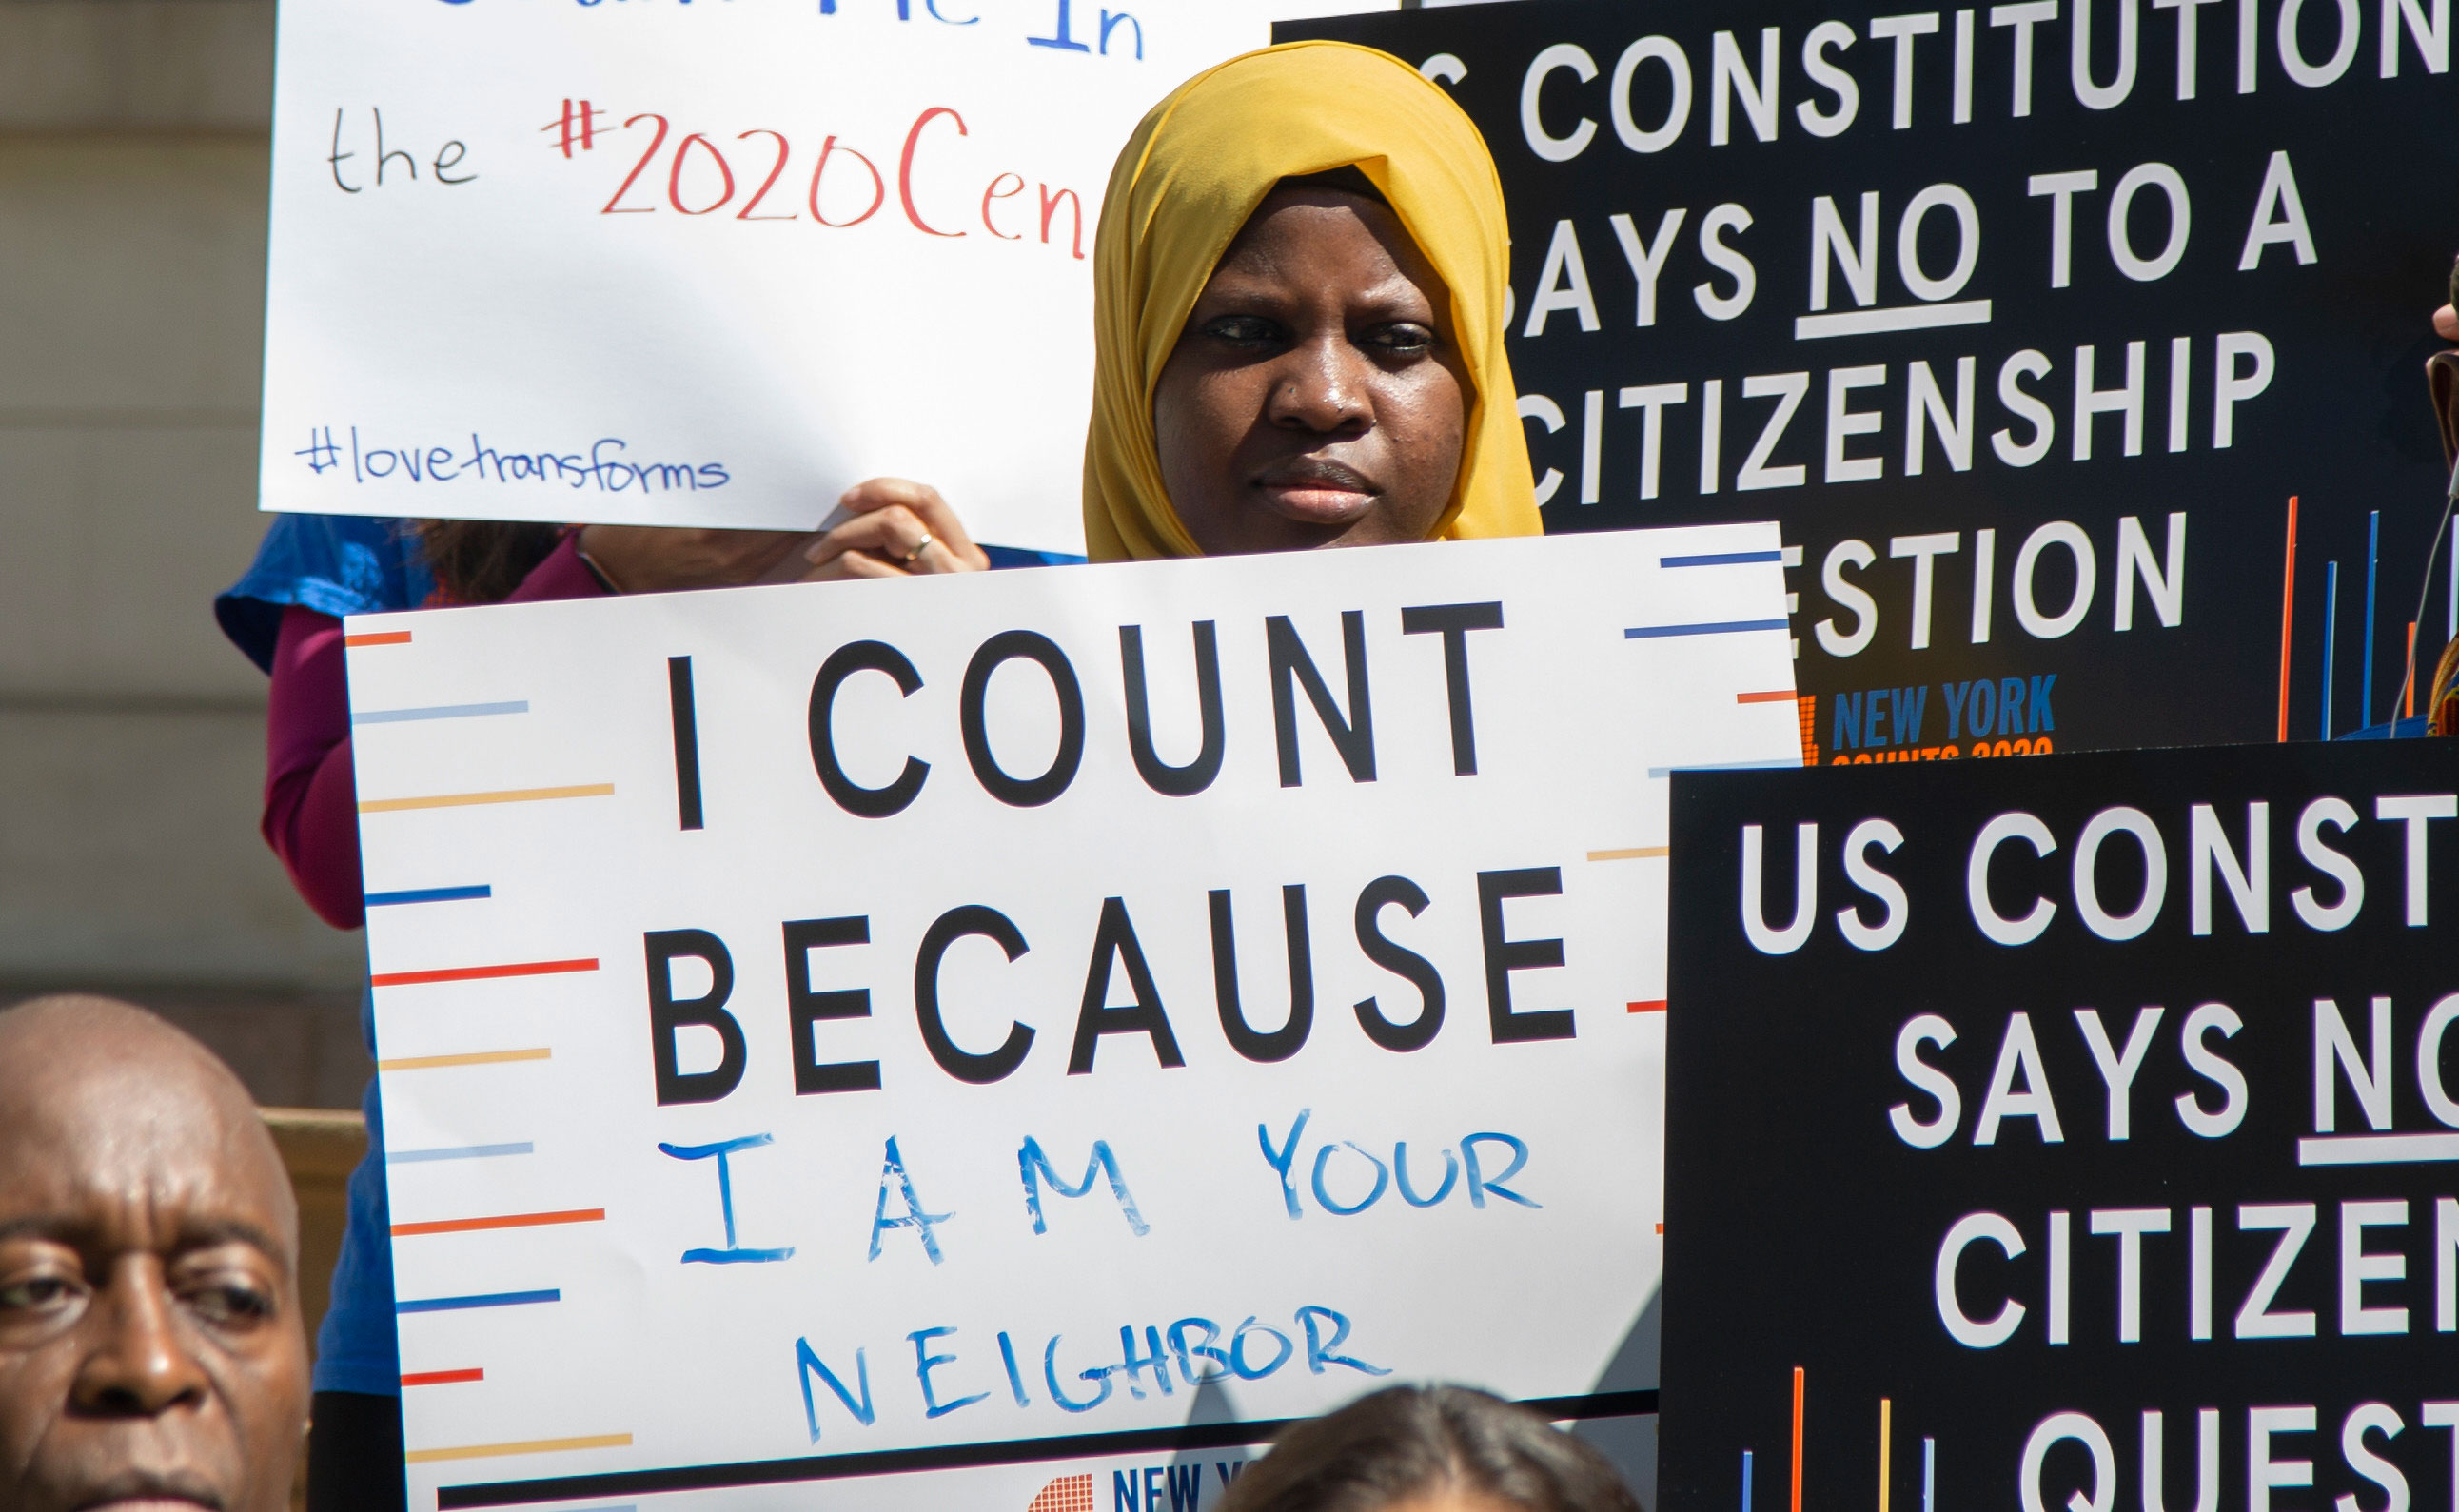 A imagem mostra um jovem em uma conferência de imprensa do Conselho da Cidade de Nova York segurando uma placa com a inscrição “Eu conto porque sou seu vizinho”.